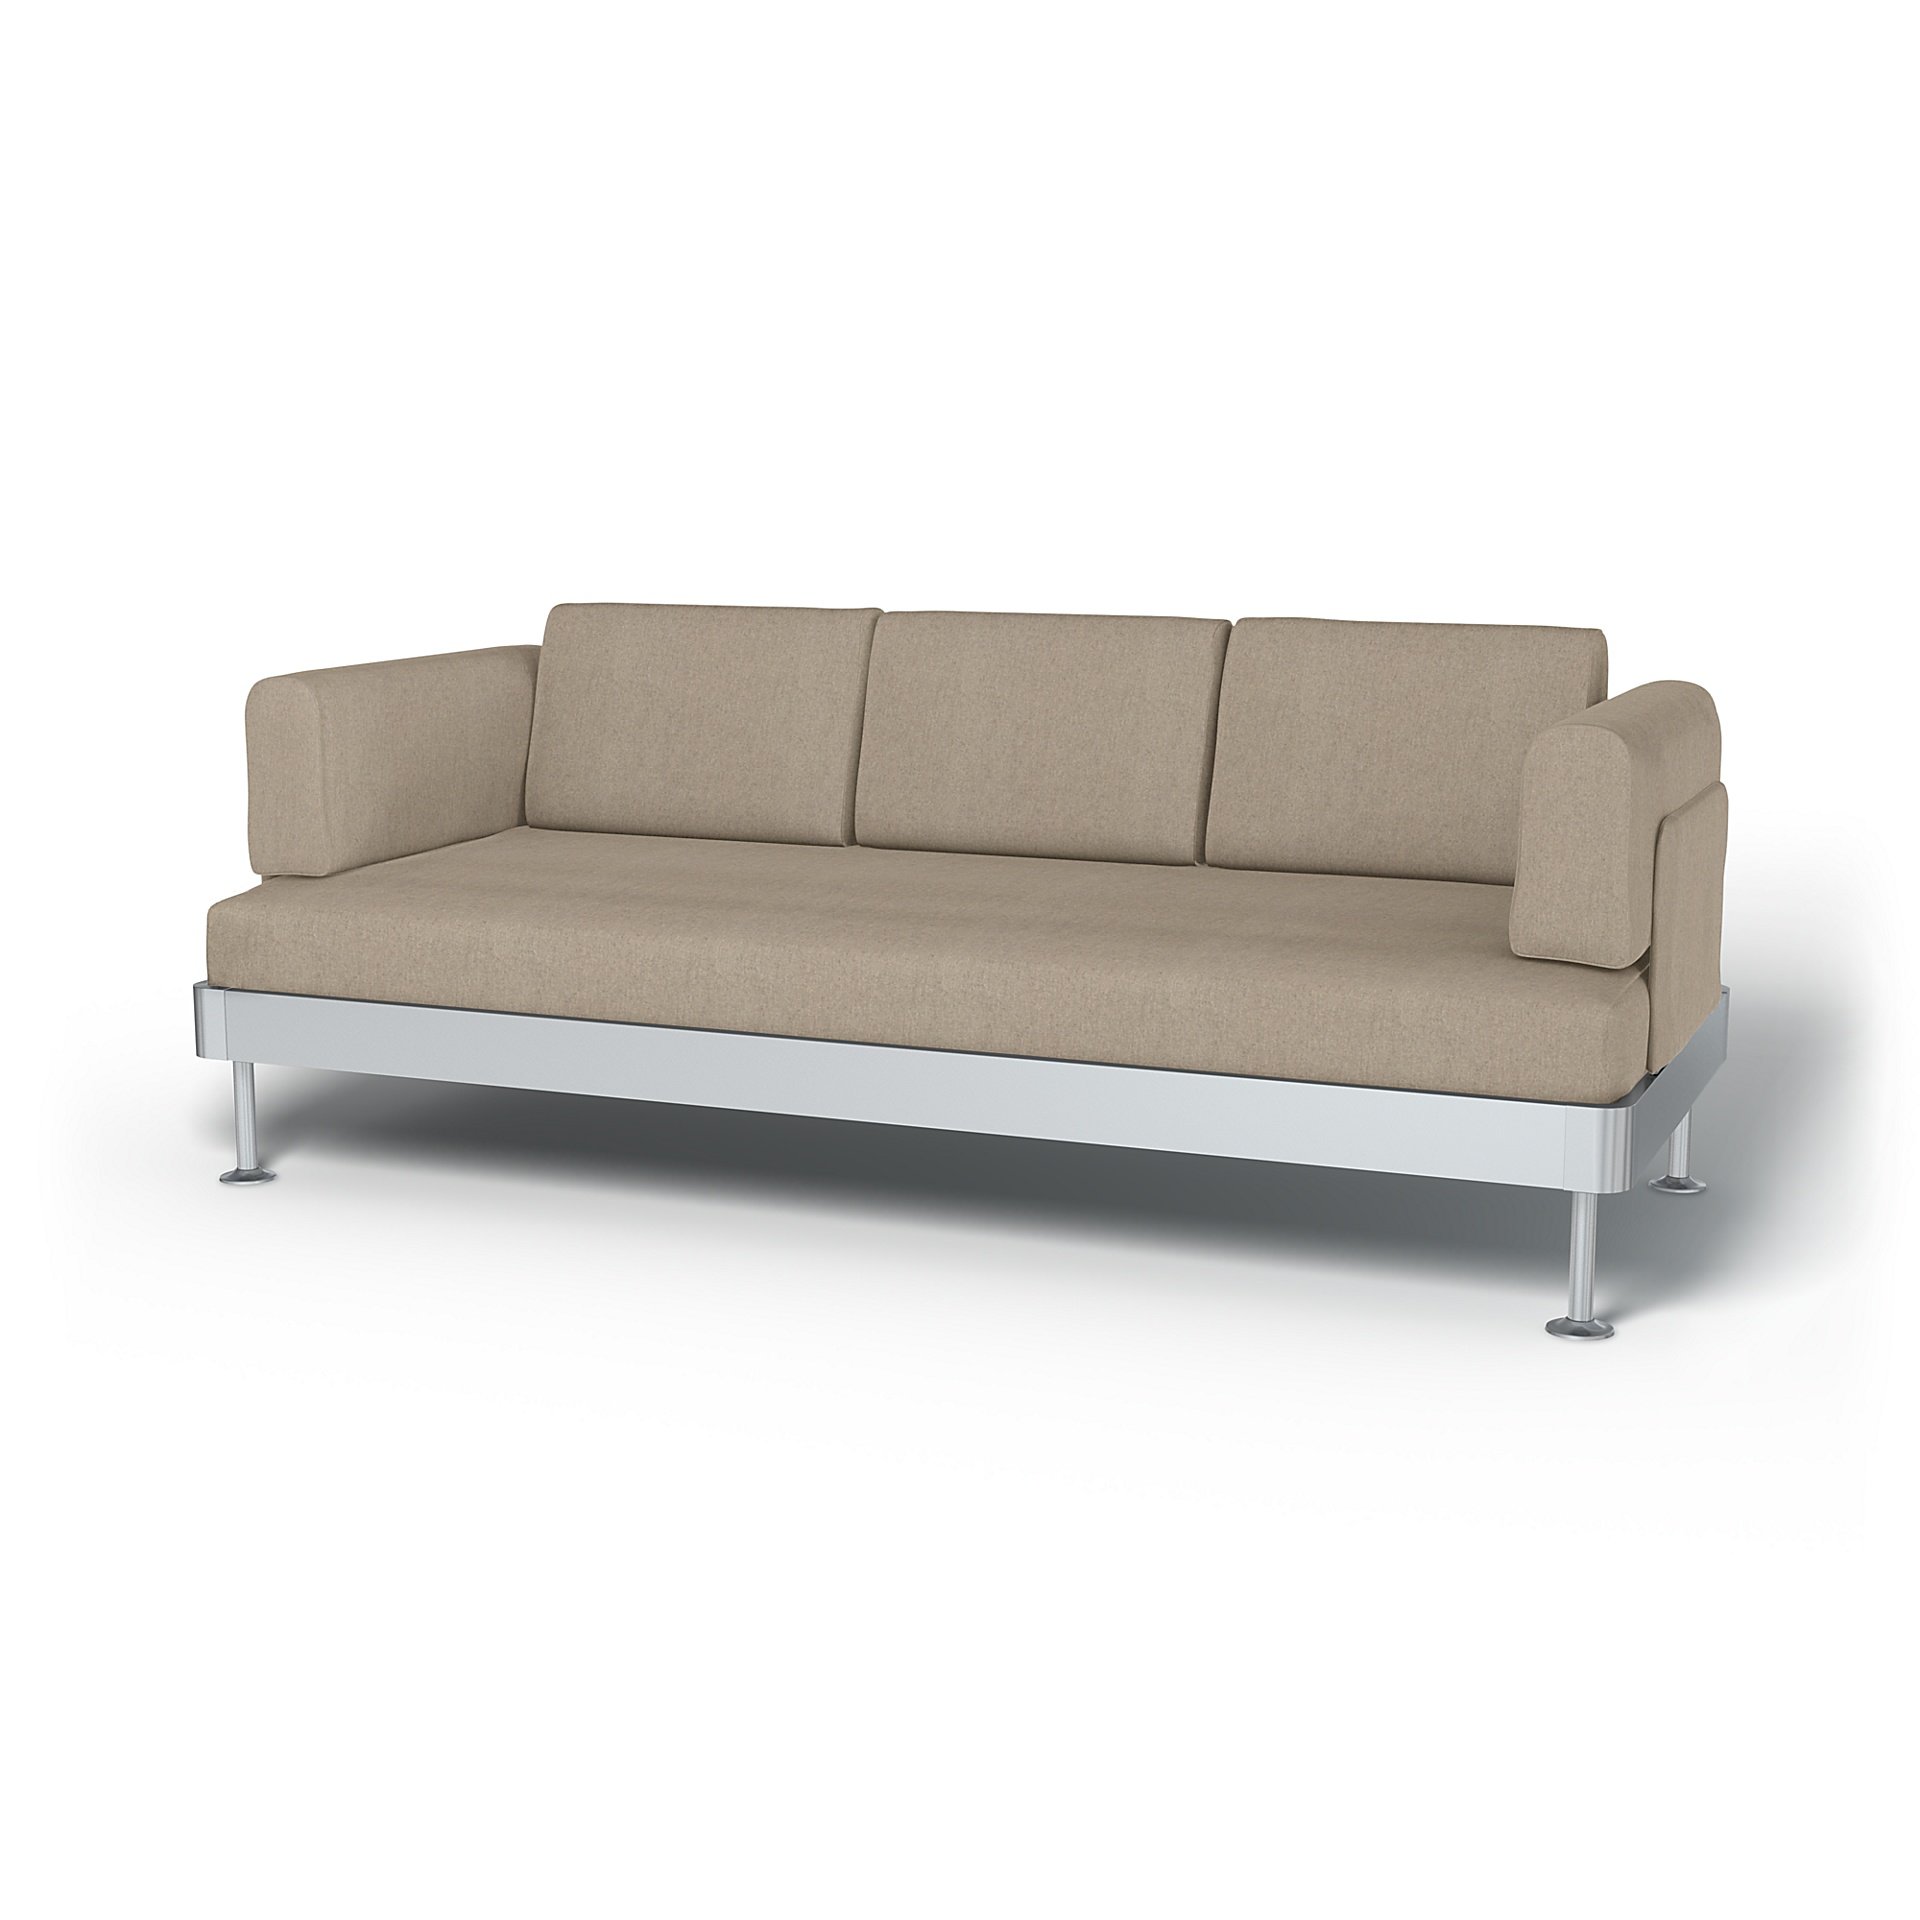 IKEA - Delaktig 3 Seater Sofa Cover, Birch, Wool - Bemz